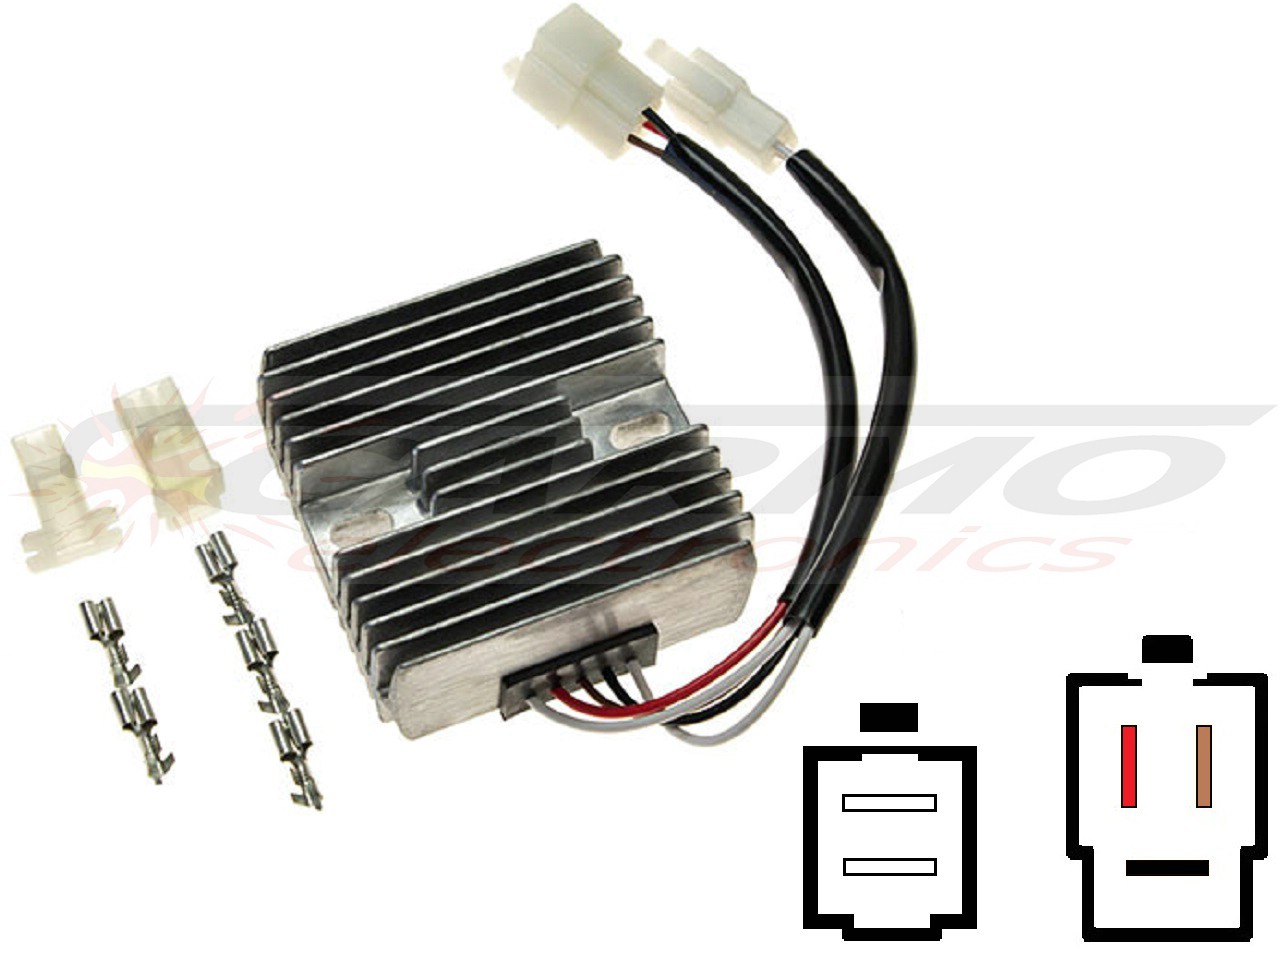 CARR071 - Yamaha XT500 XT550 XT600 TT600 SR250 Voltage regulator rectifier (SH522G-12, SH222) - Click Image to Close